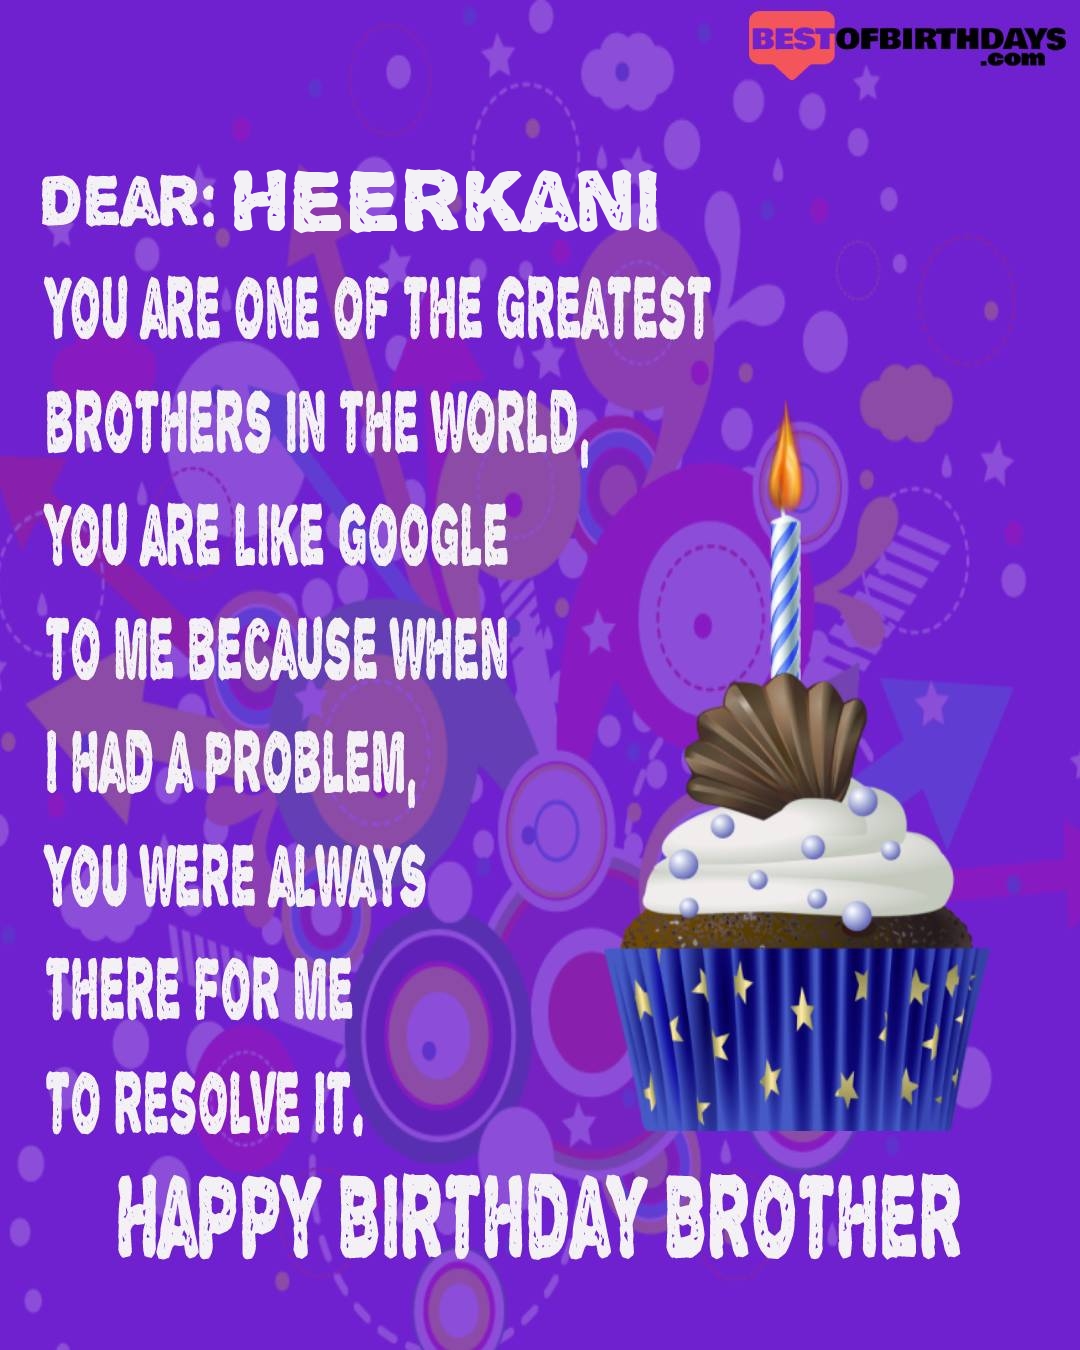 Happy birthday heerkani bhai brother bro